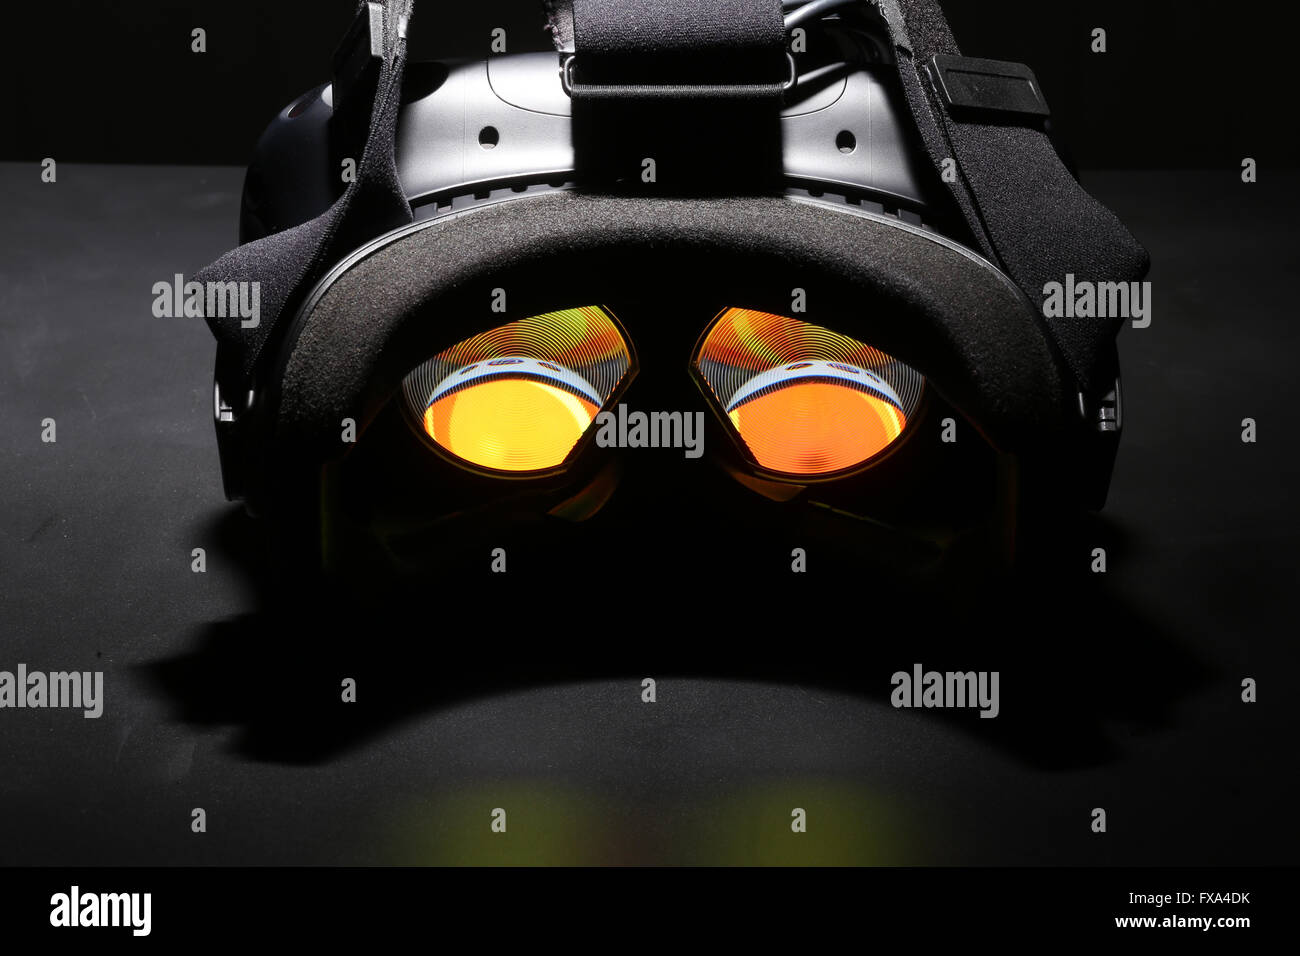 Casque de réalité virtuelle avec les verres lumineux Banque D'Images